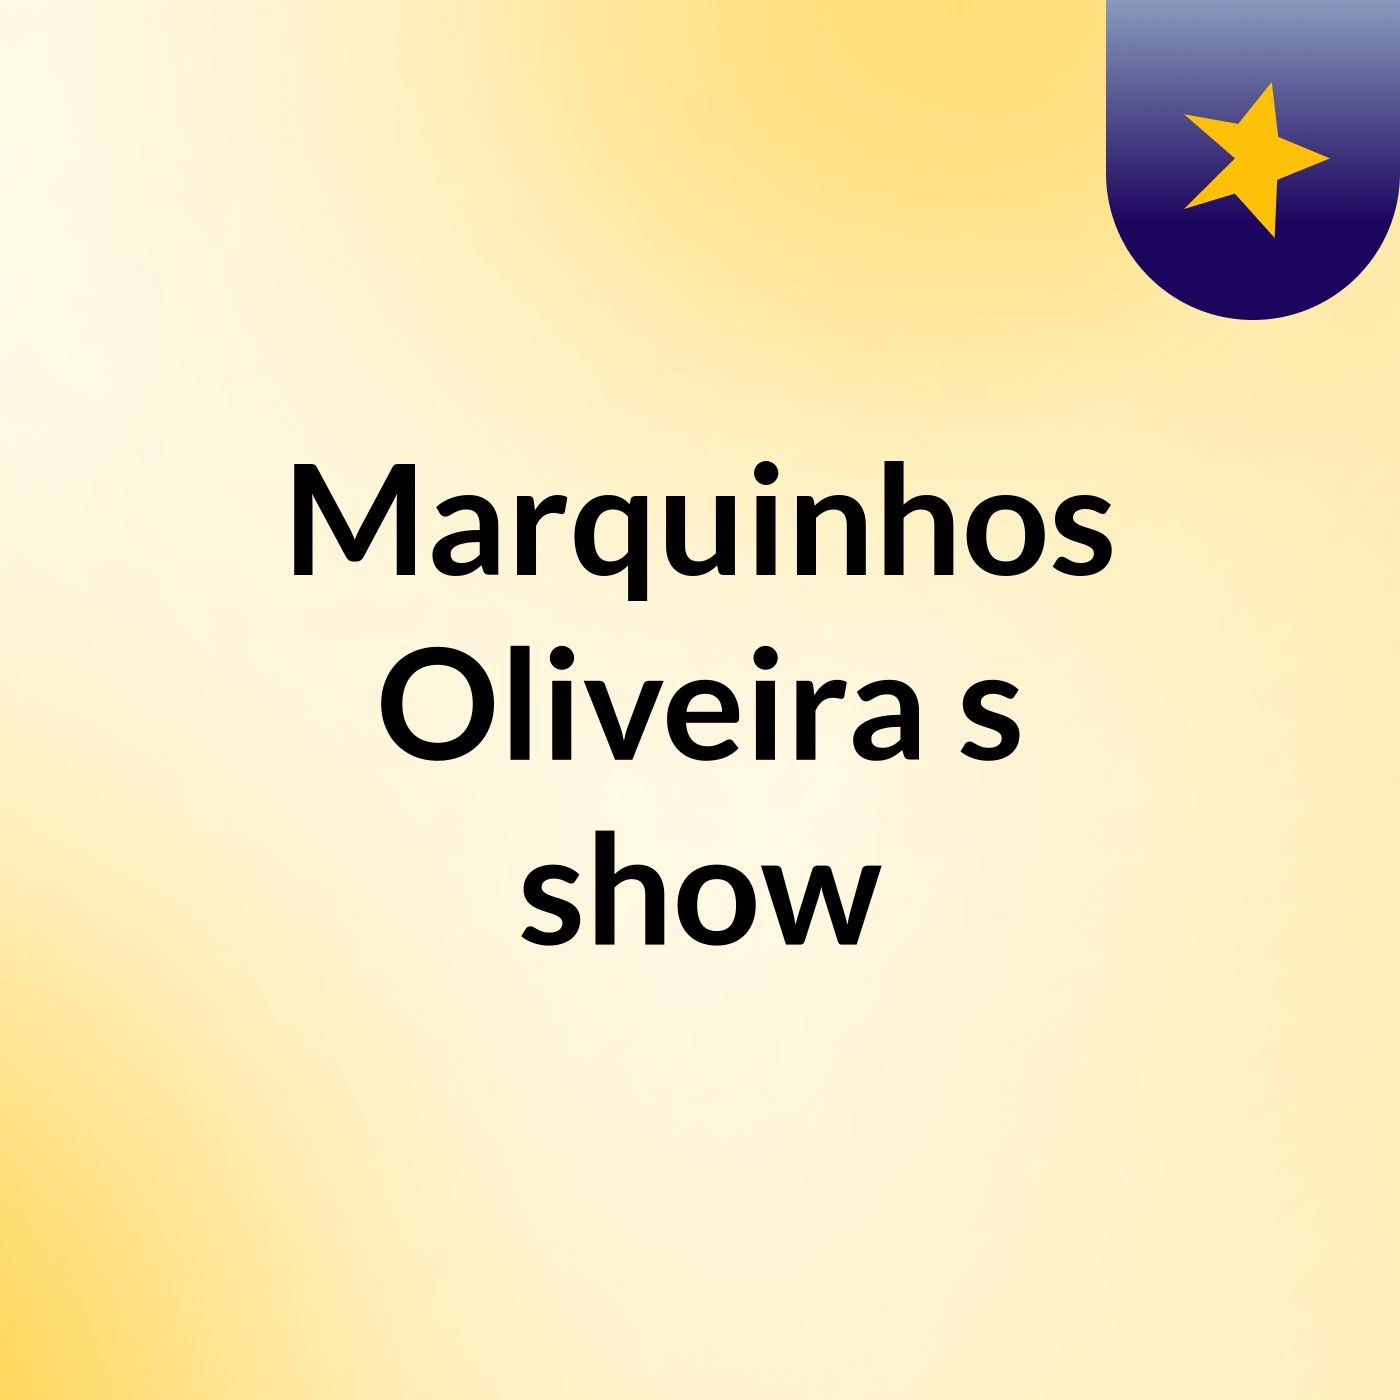 Marquinhos Oliveira's show